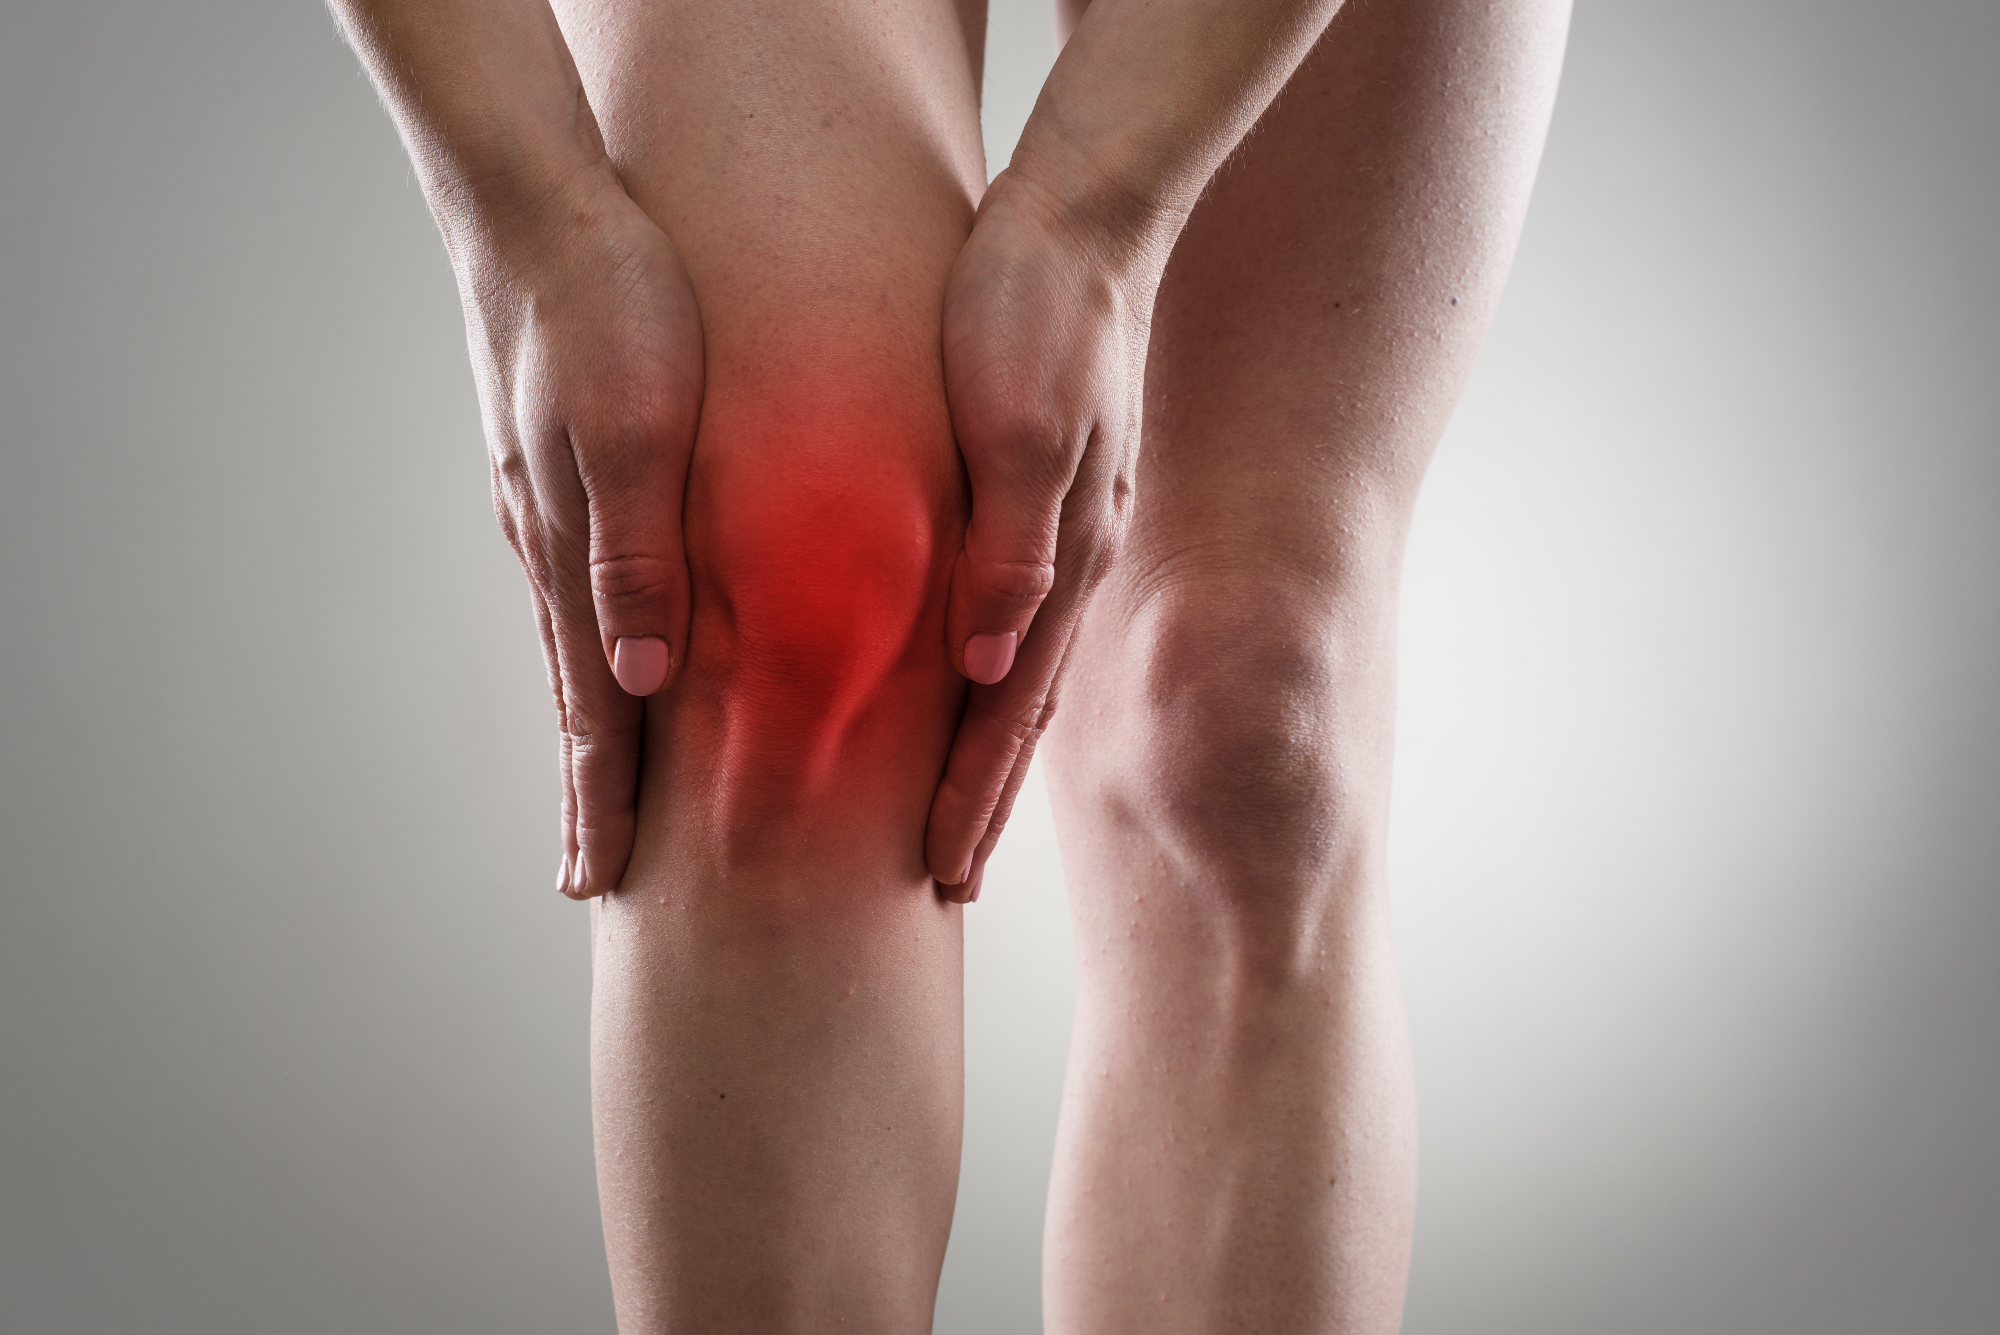 Artroza kolena povzroča bolečine, otekline in togost